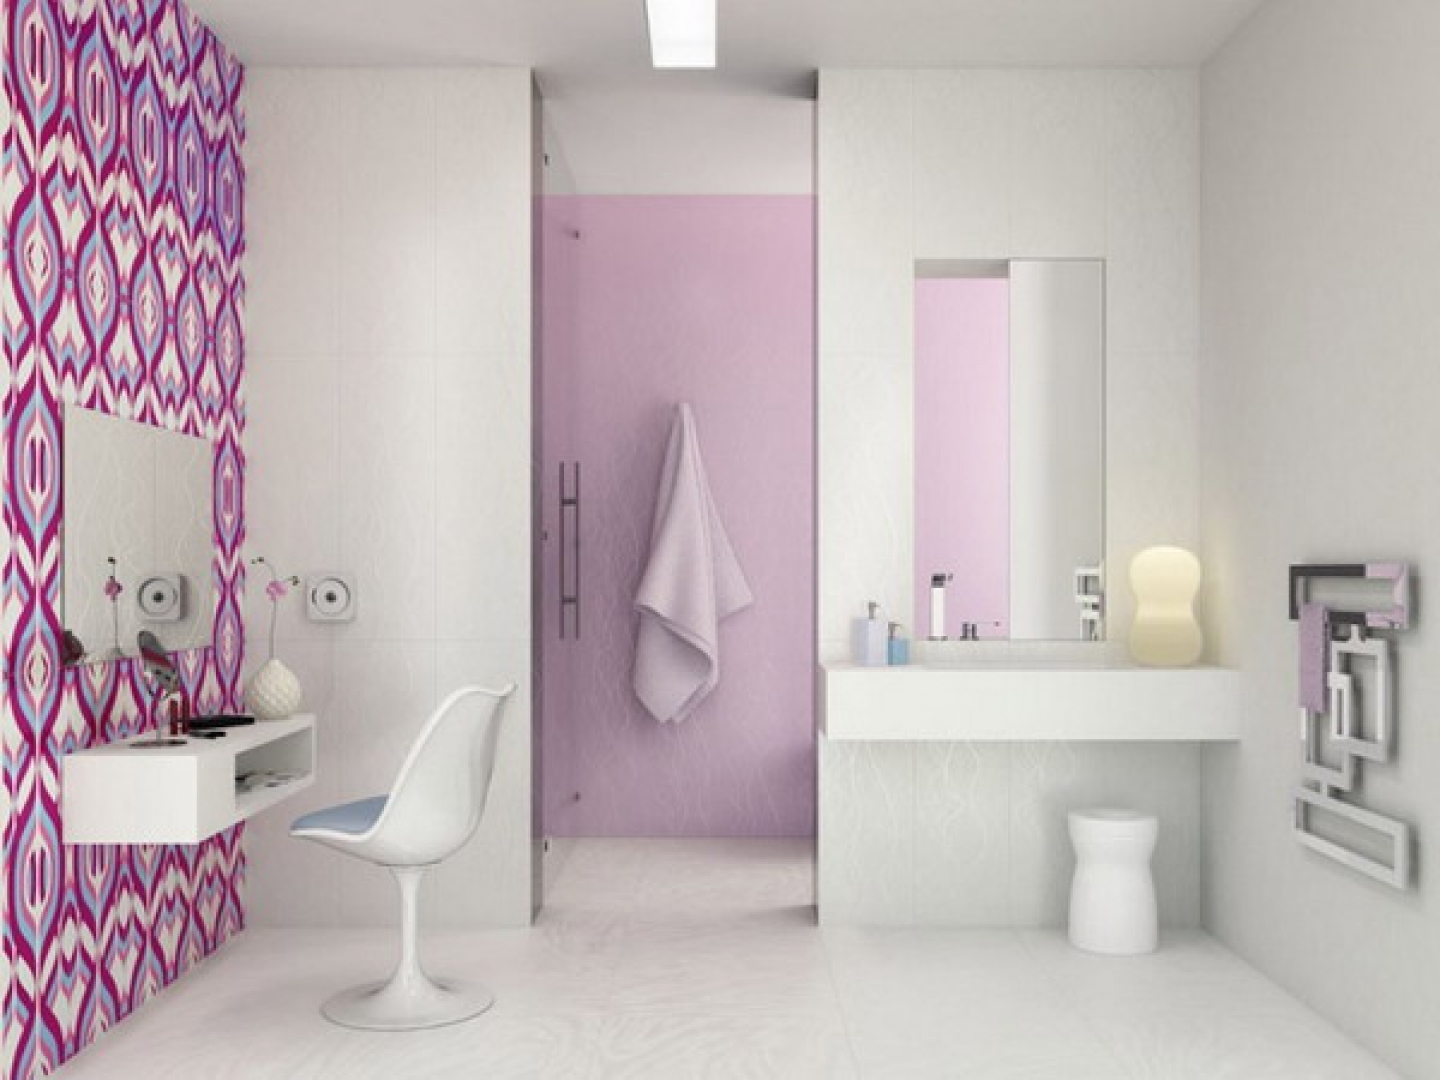 wallpaper bathroom wallpaper decorating ideas bathroom wallpaper ideas 1440x1080